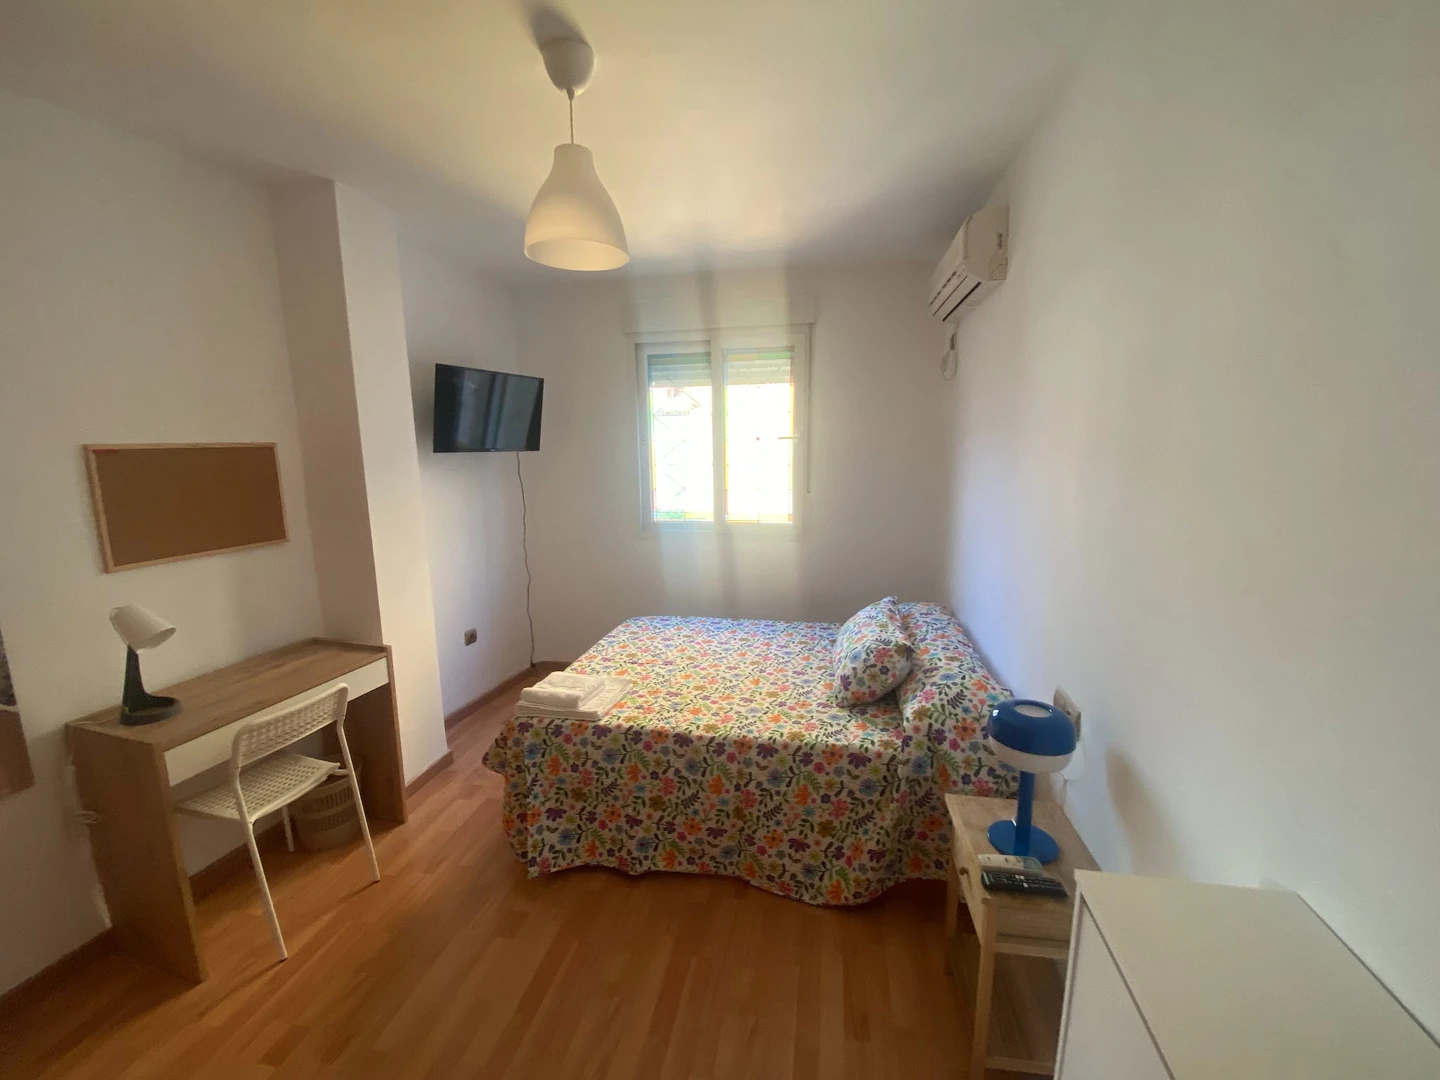 Shared room in 3-bedroom flat Malaga